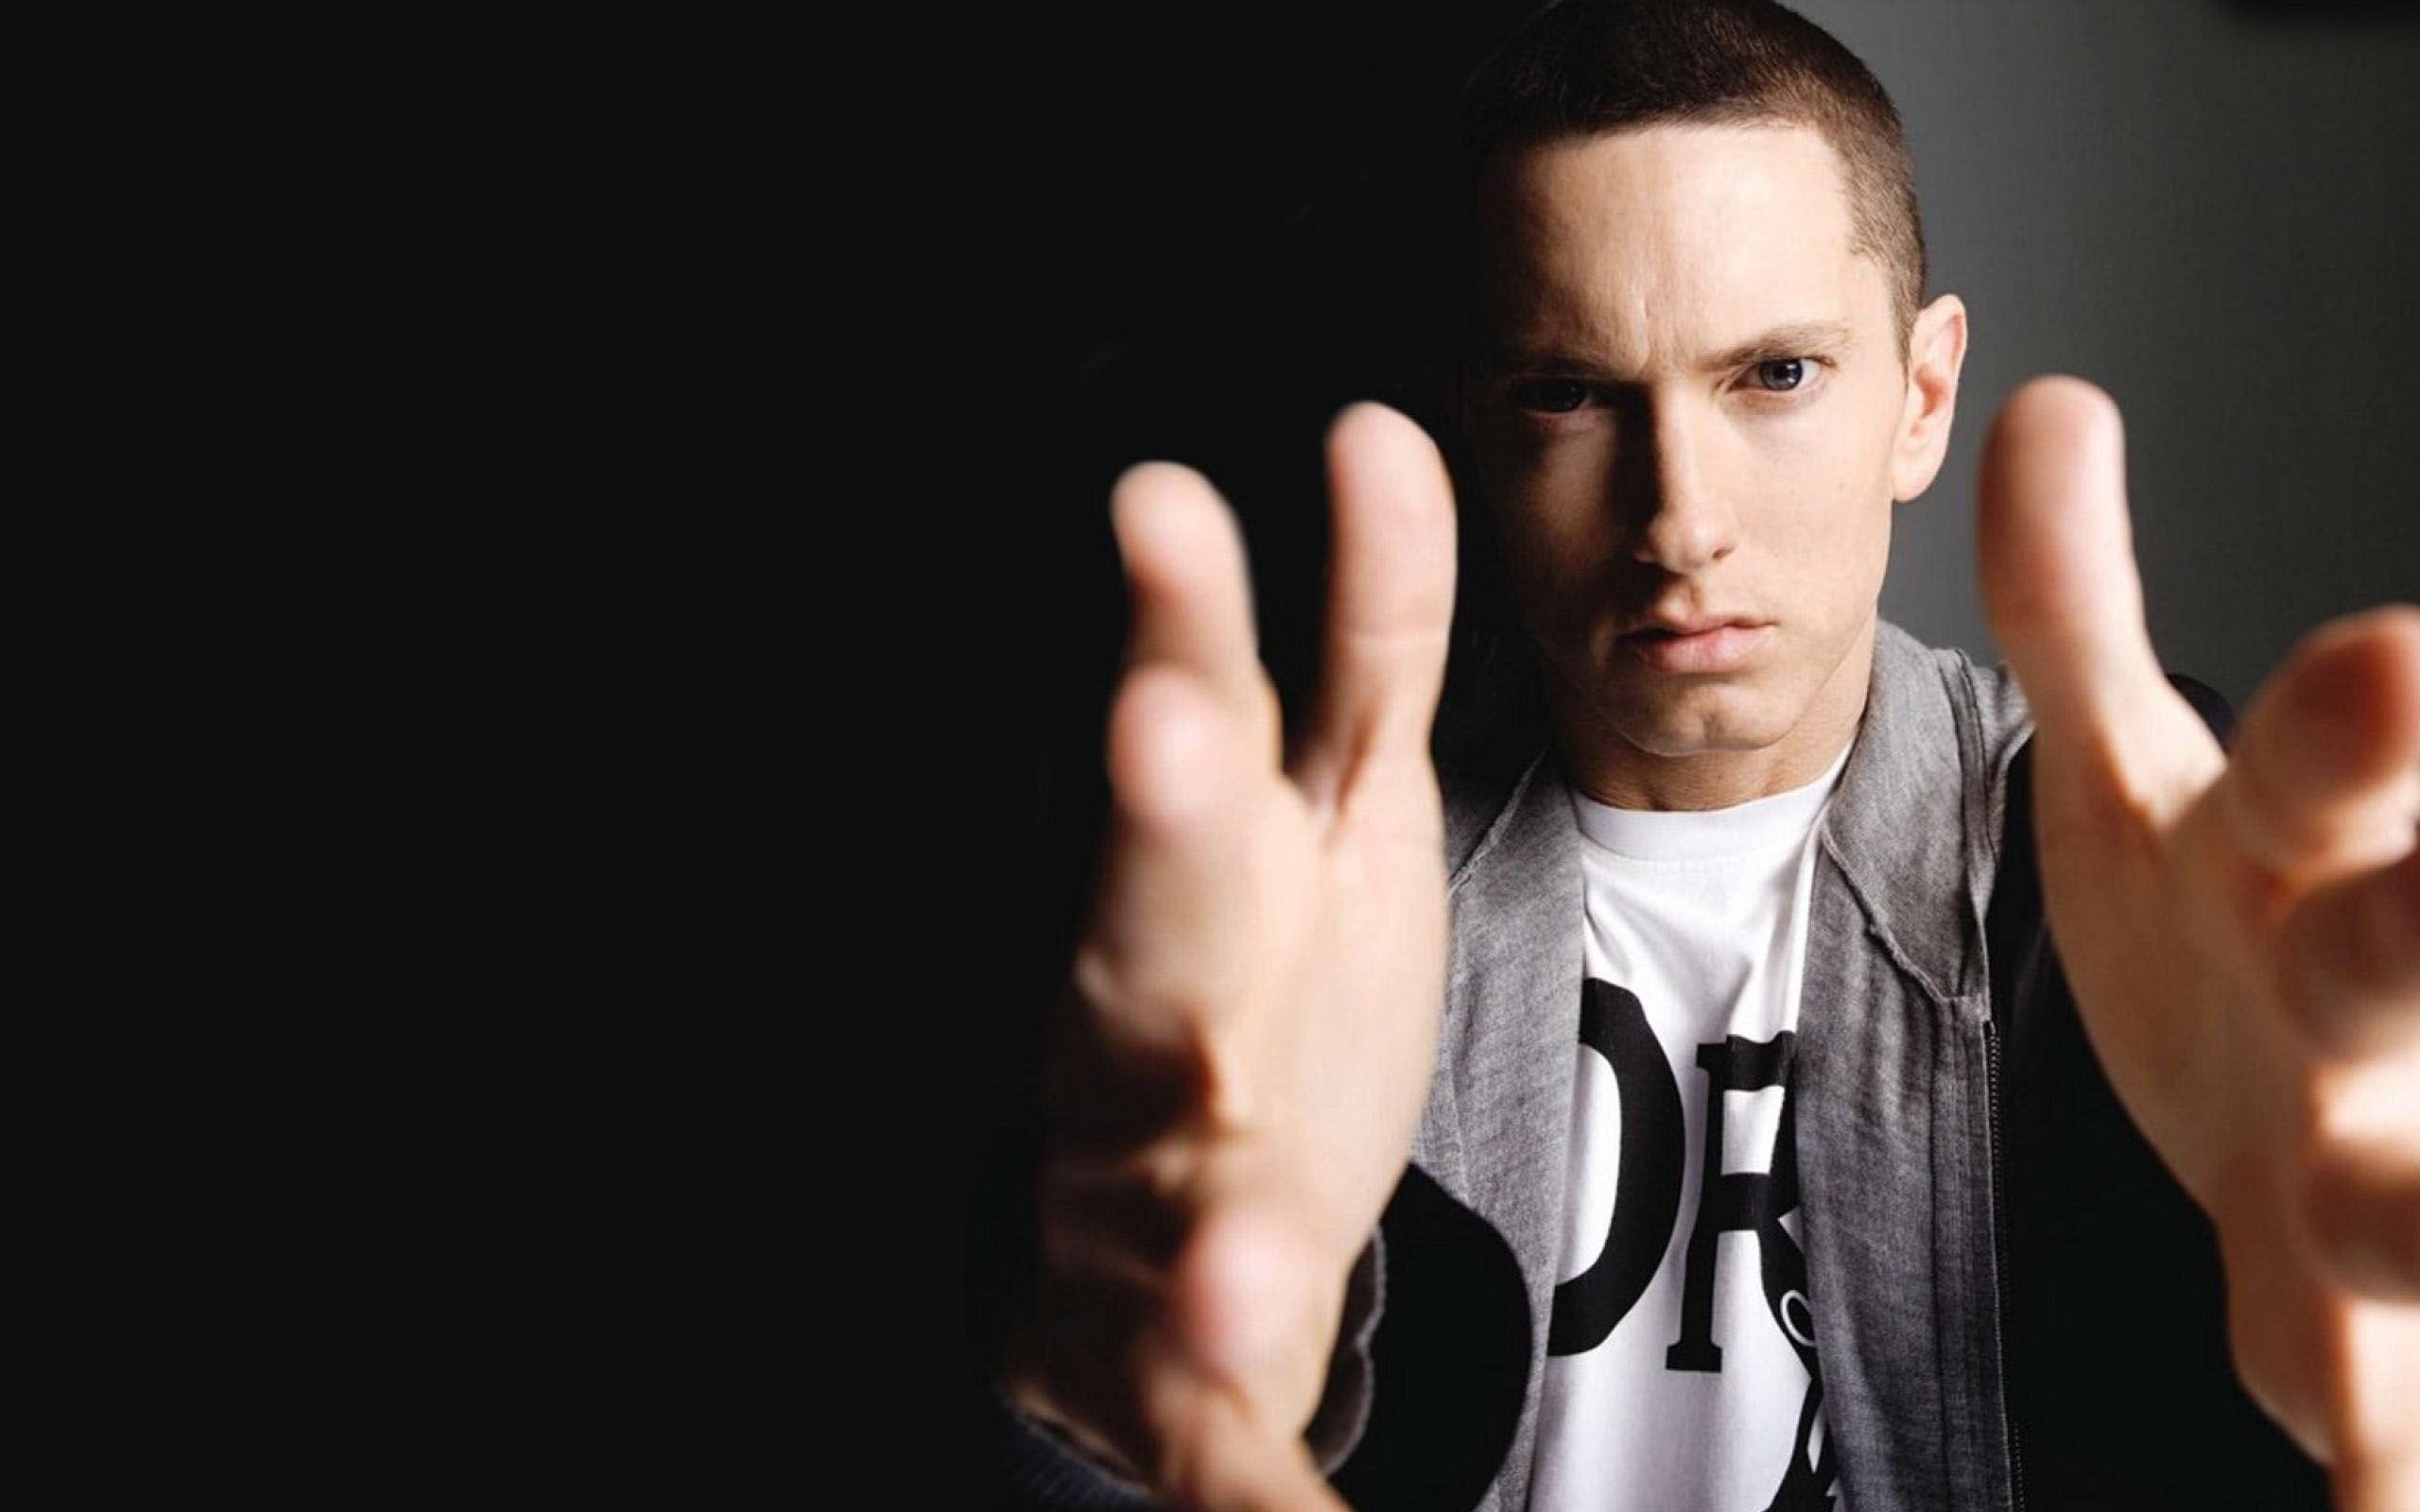 Eminem Singer Wallpaper. Wallpaper, Background, Image, Art Photo